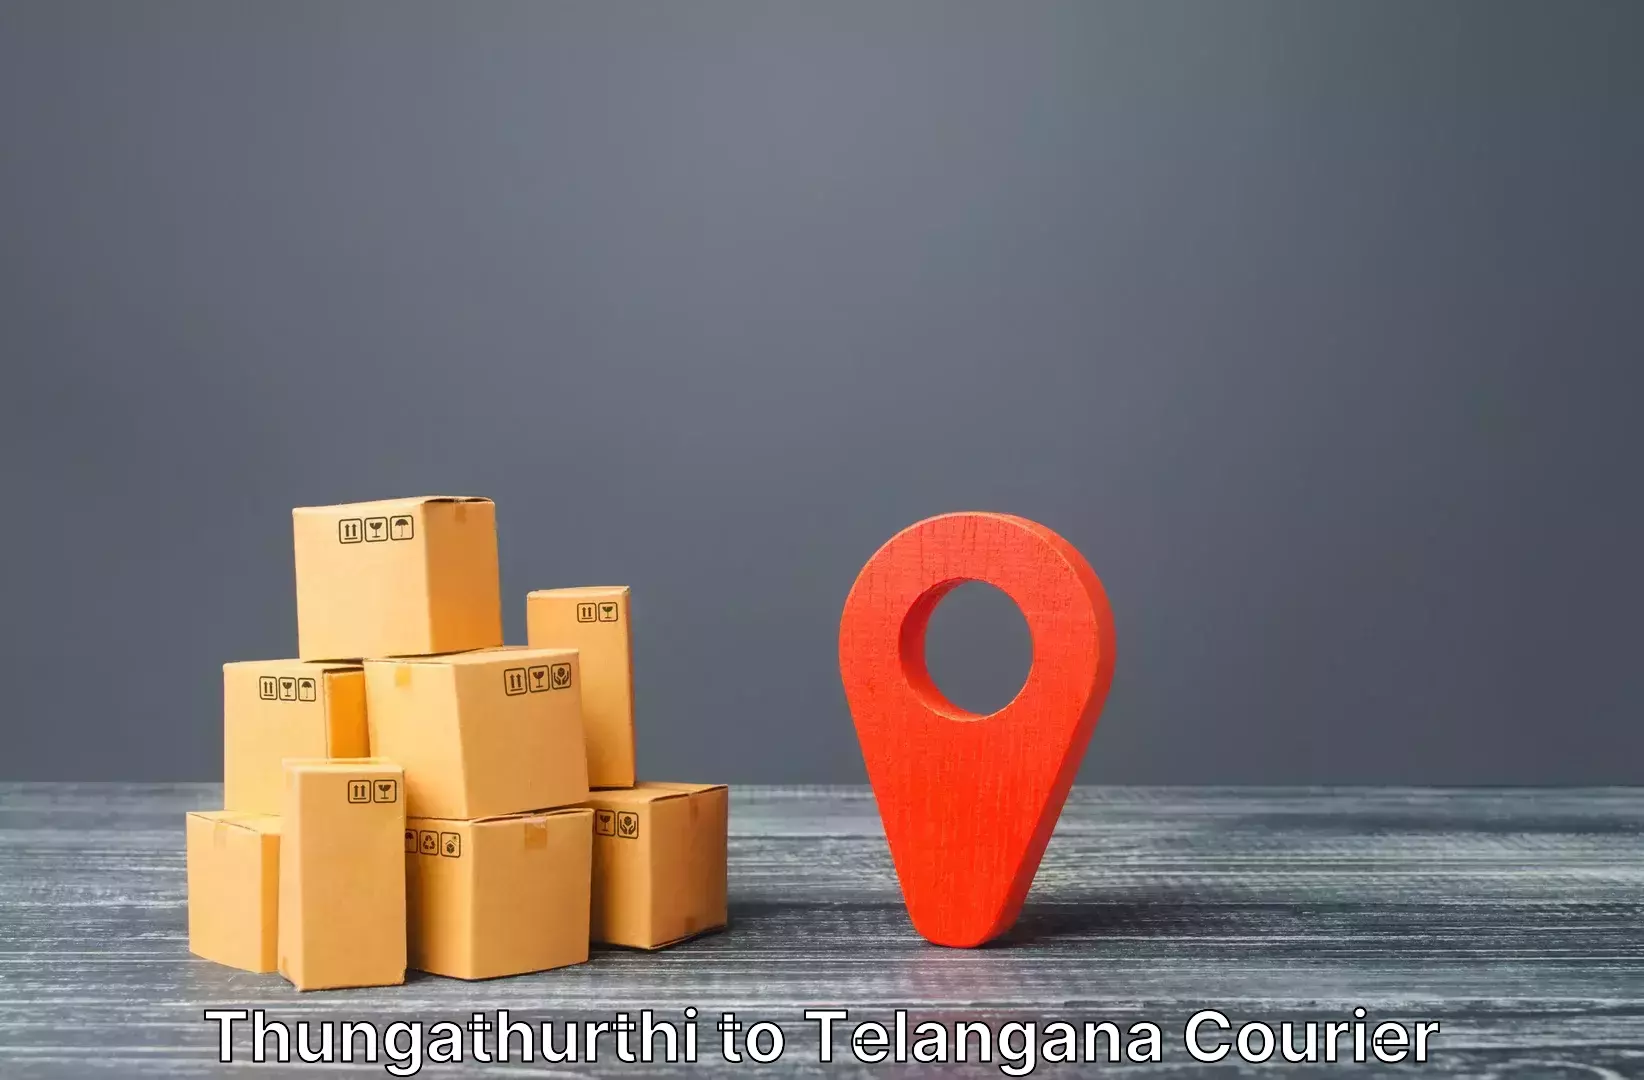 Luggage delivery network Thungathurthi to Kothakota